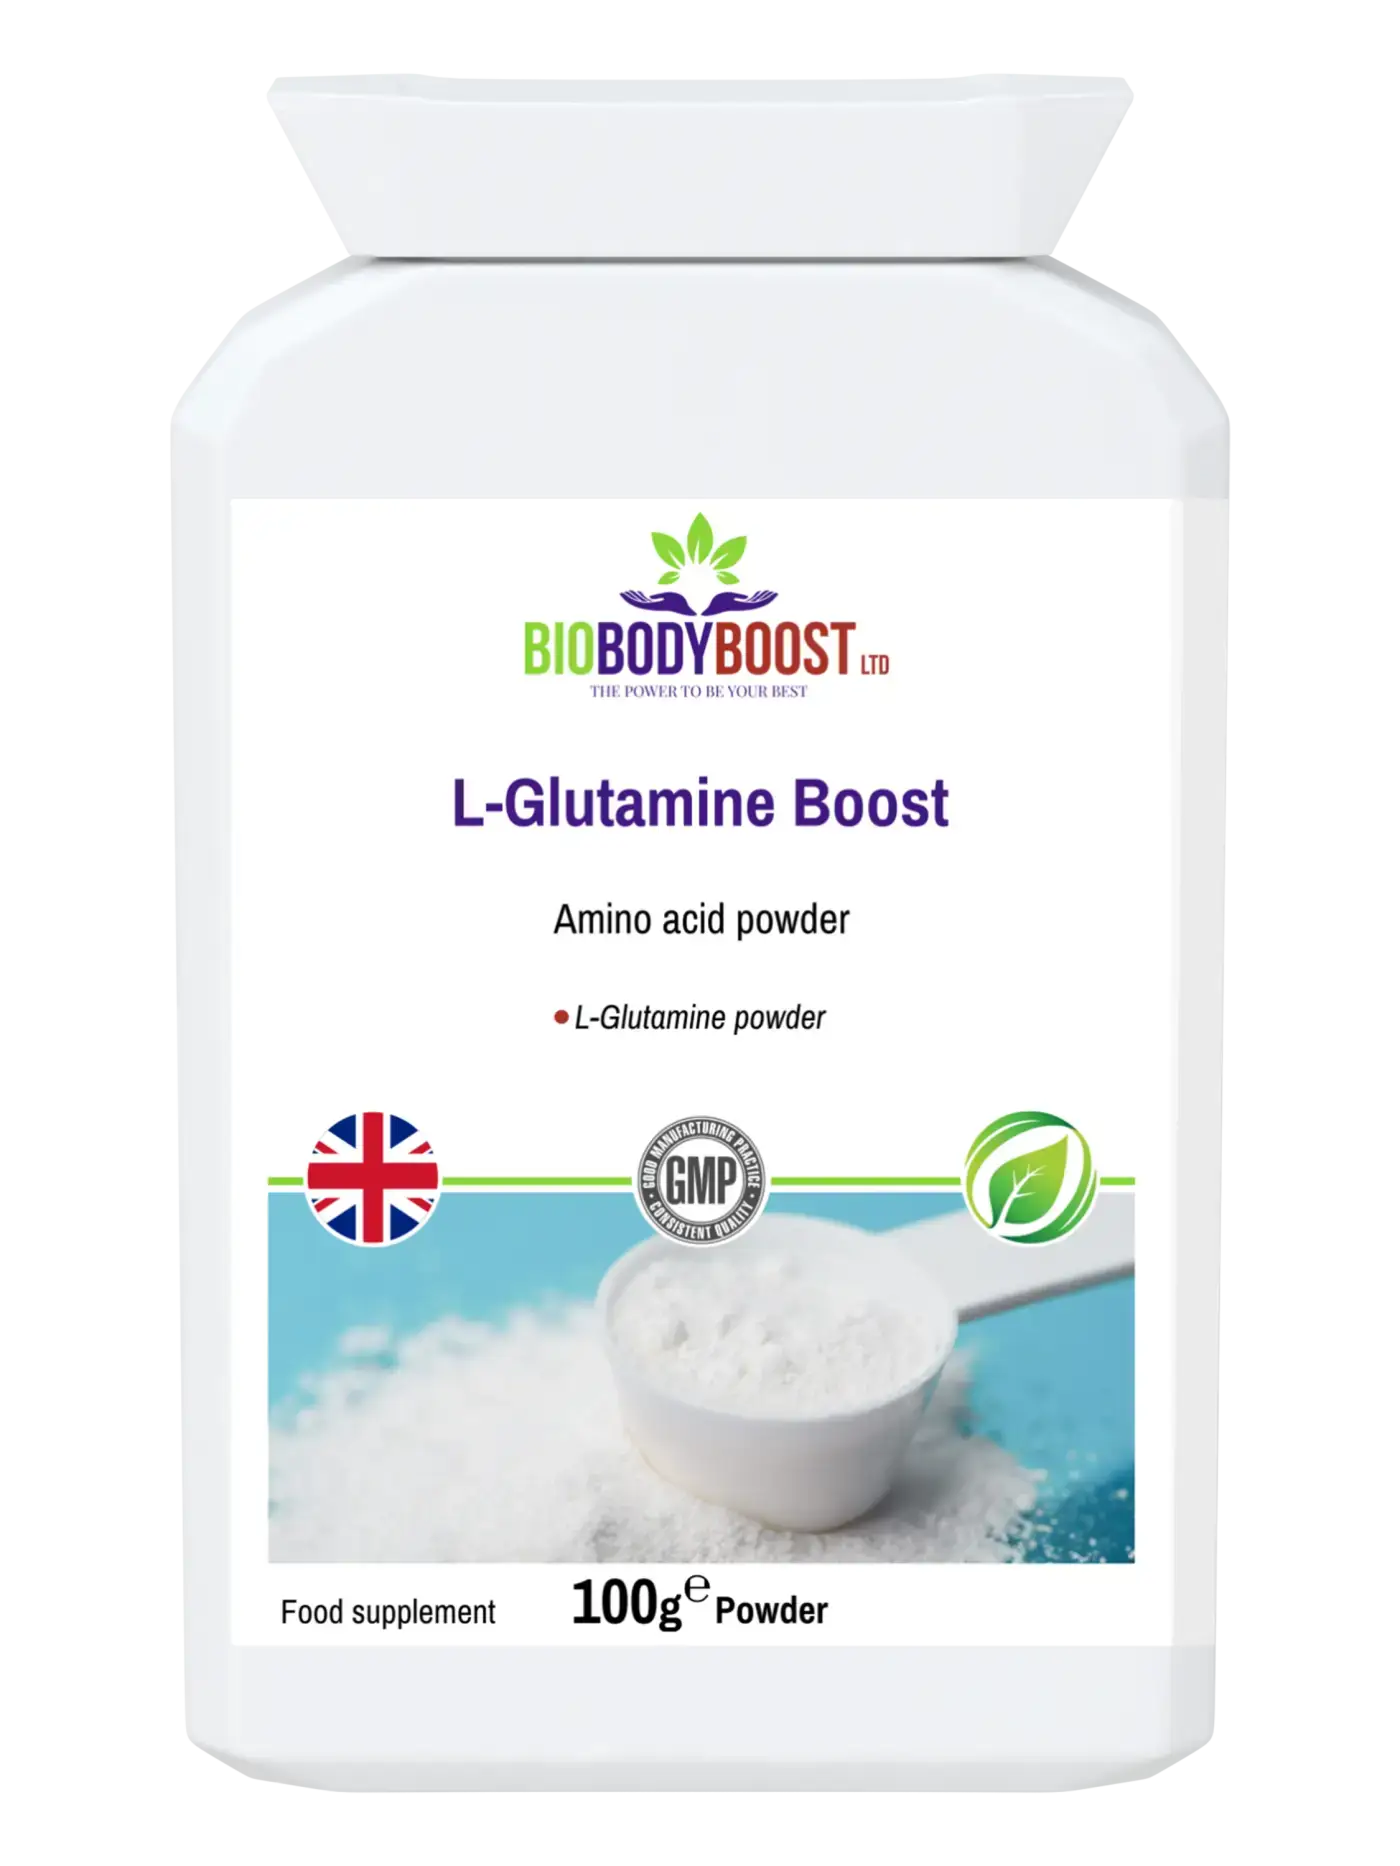 L-Glutamine Boost - Premium Vitamins & Supplements from BioBodyBoost - Just £11.99! Shop now at BioBodyBoost